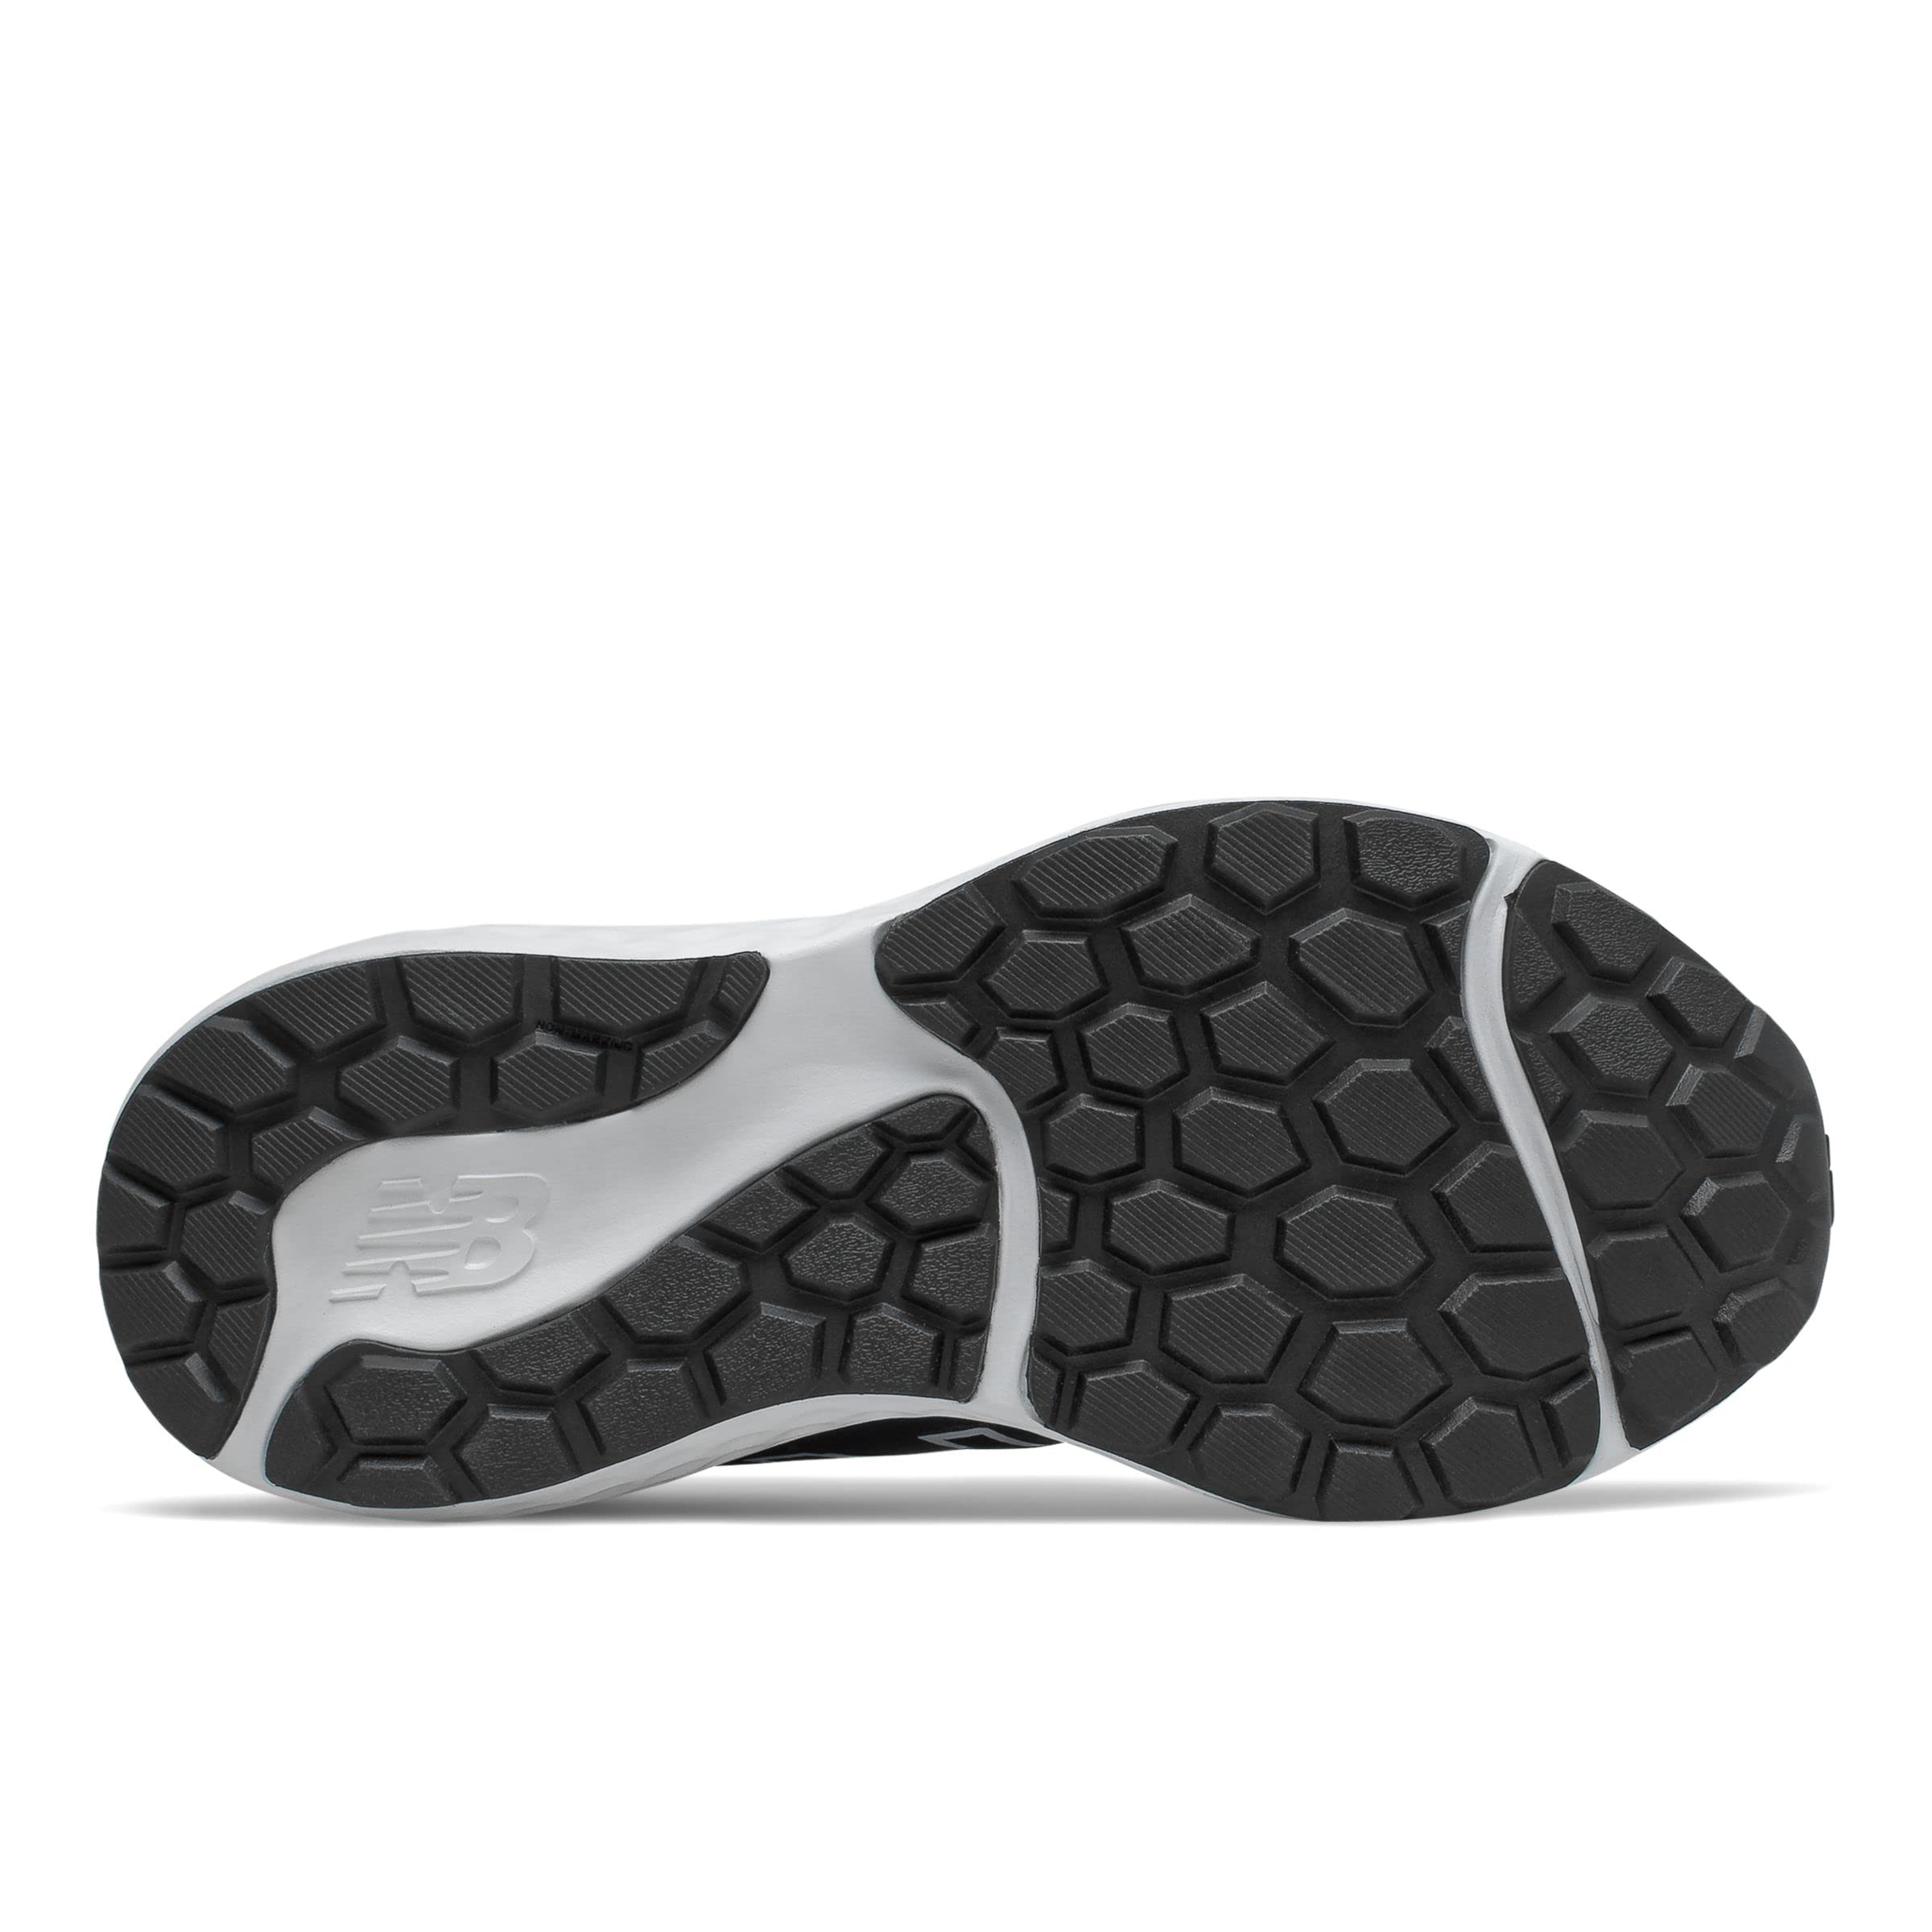 New Balance Women's 520 V7 Running Shoe, Black/White, 8.5 Wide